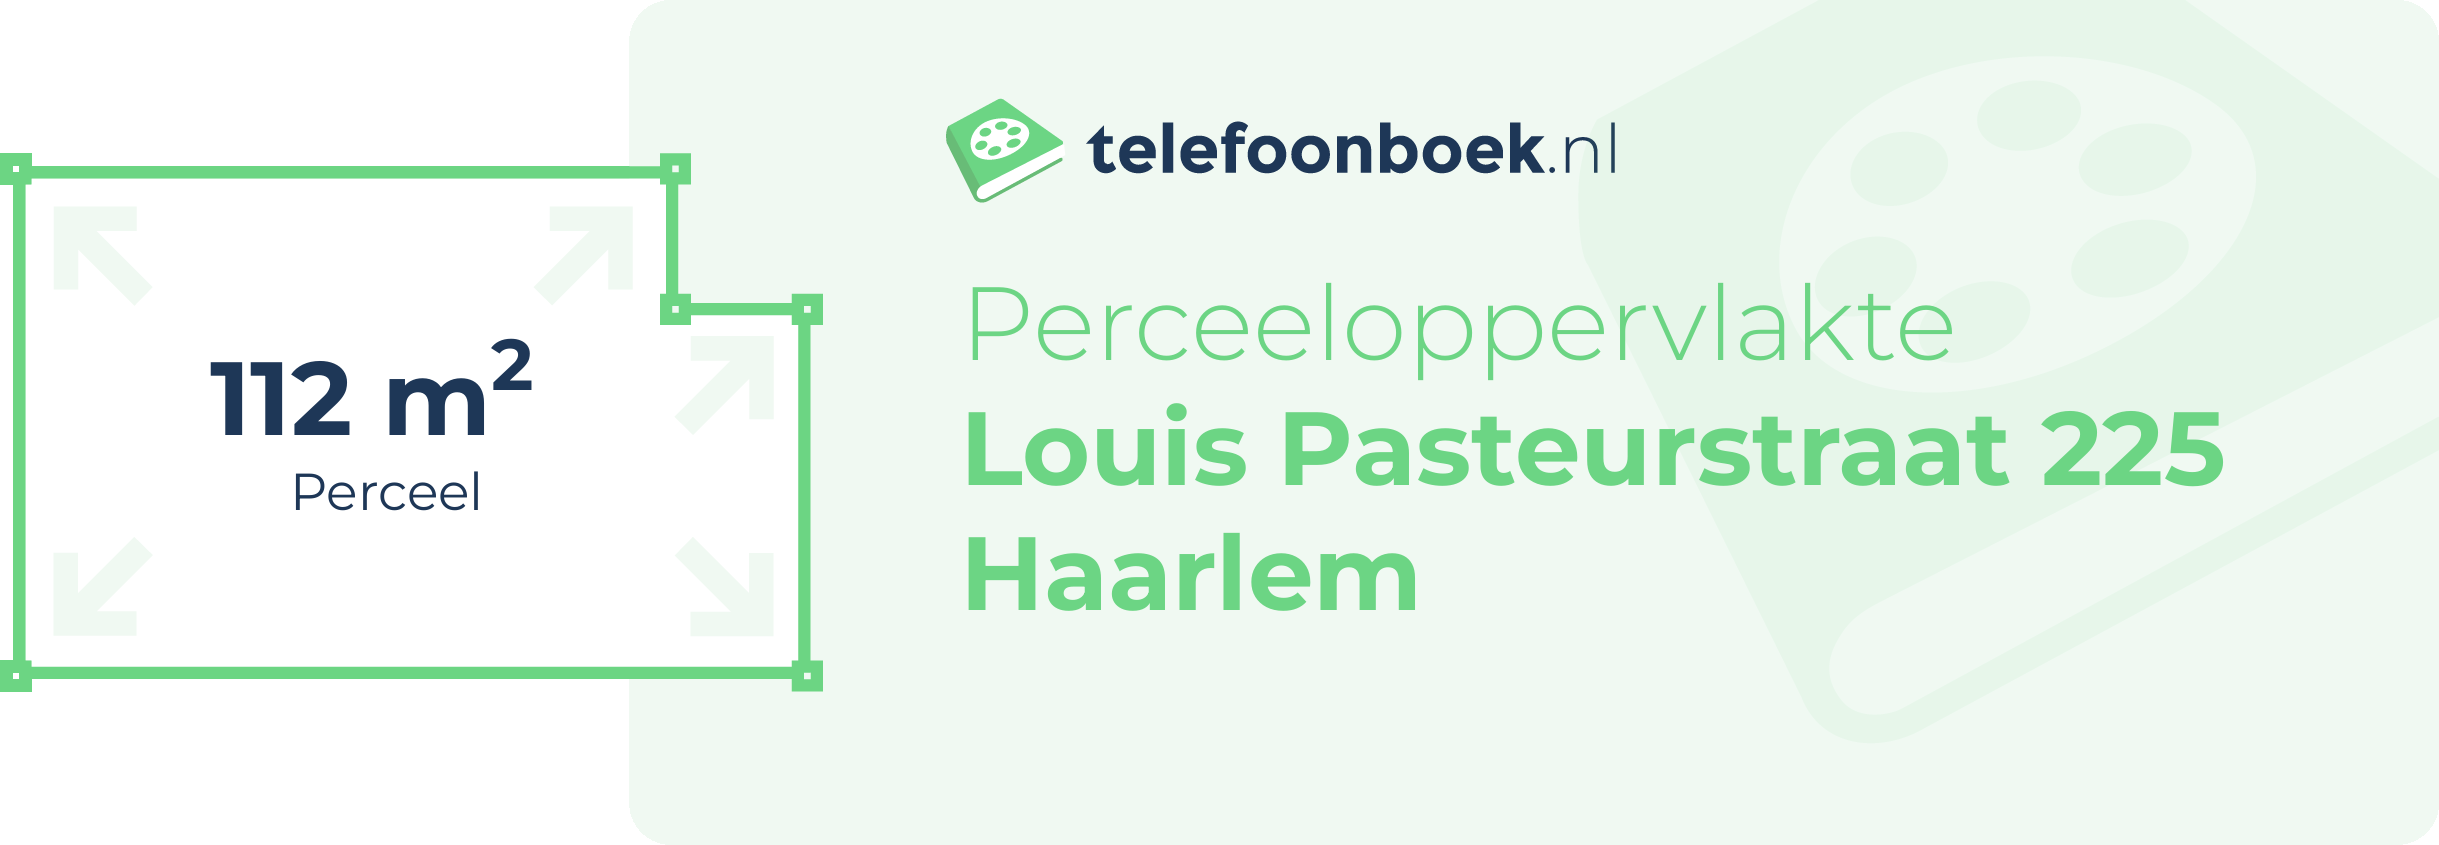 Perceeloppervlakte Louis Pasteurstraat 225 Haarlem